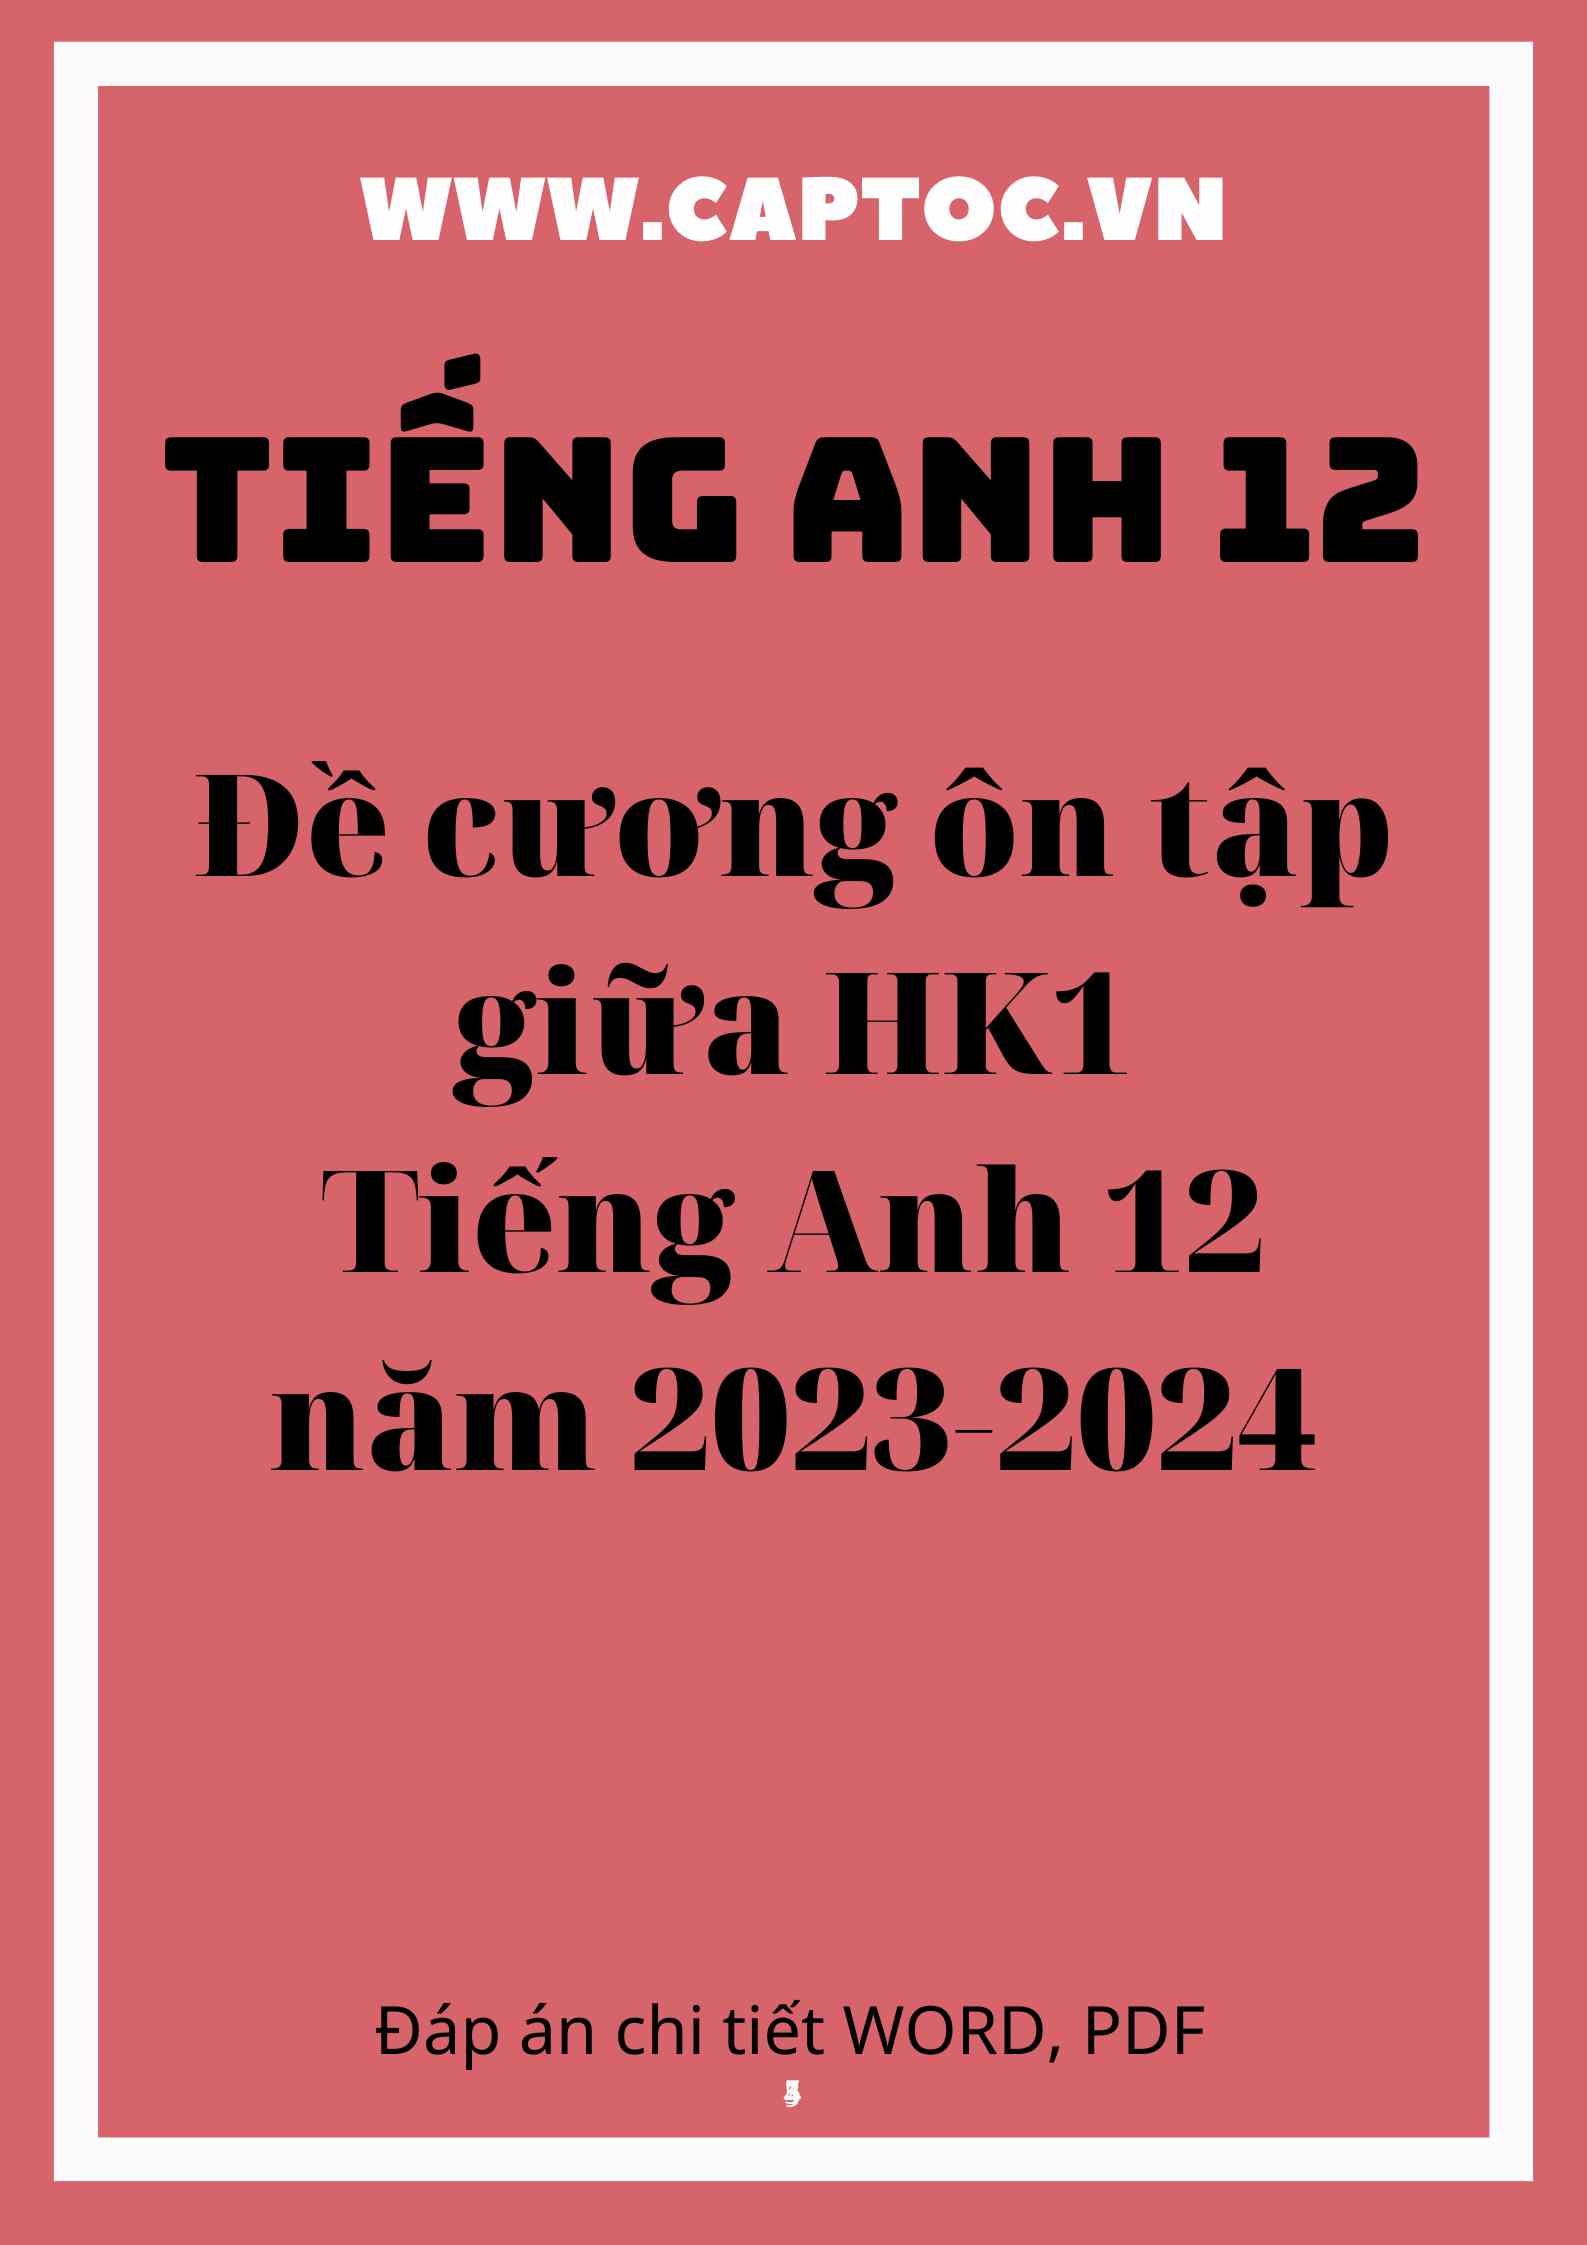 Đề cương ôn tập giữa HK1 Tiếng Anh 12 năm 2023-2024